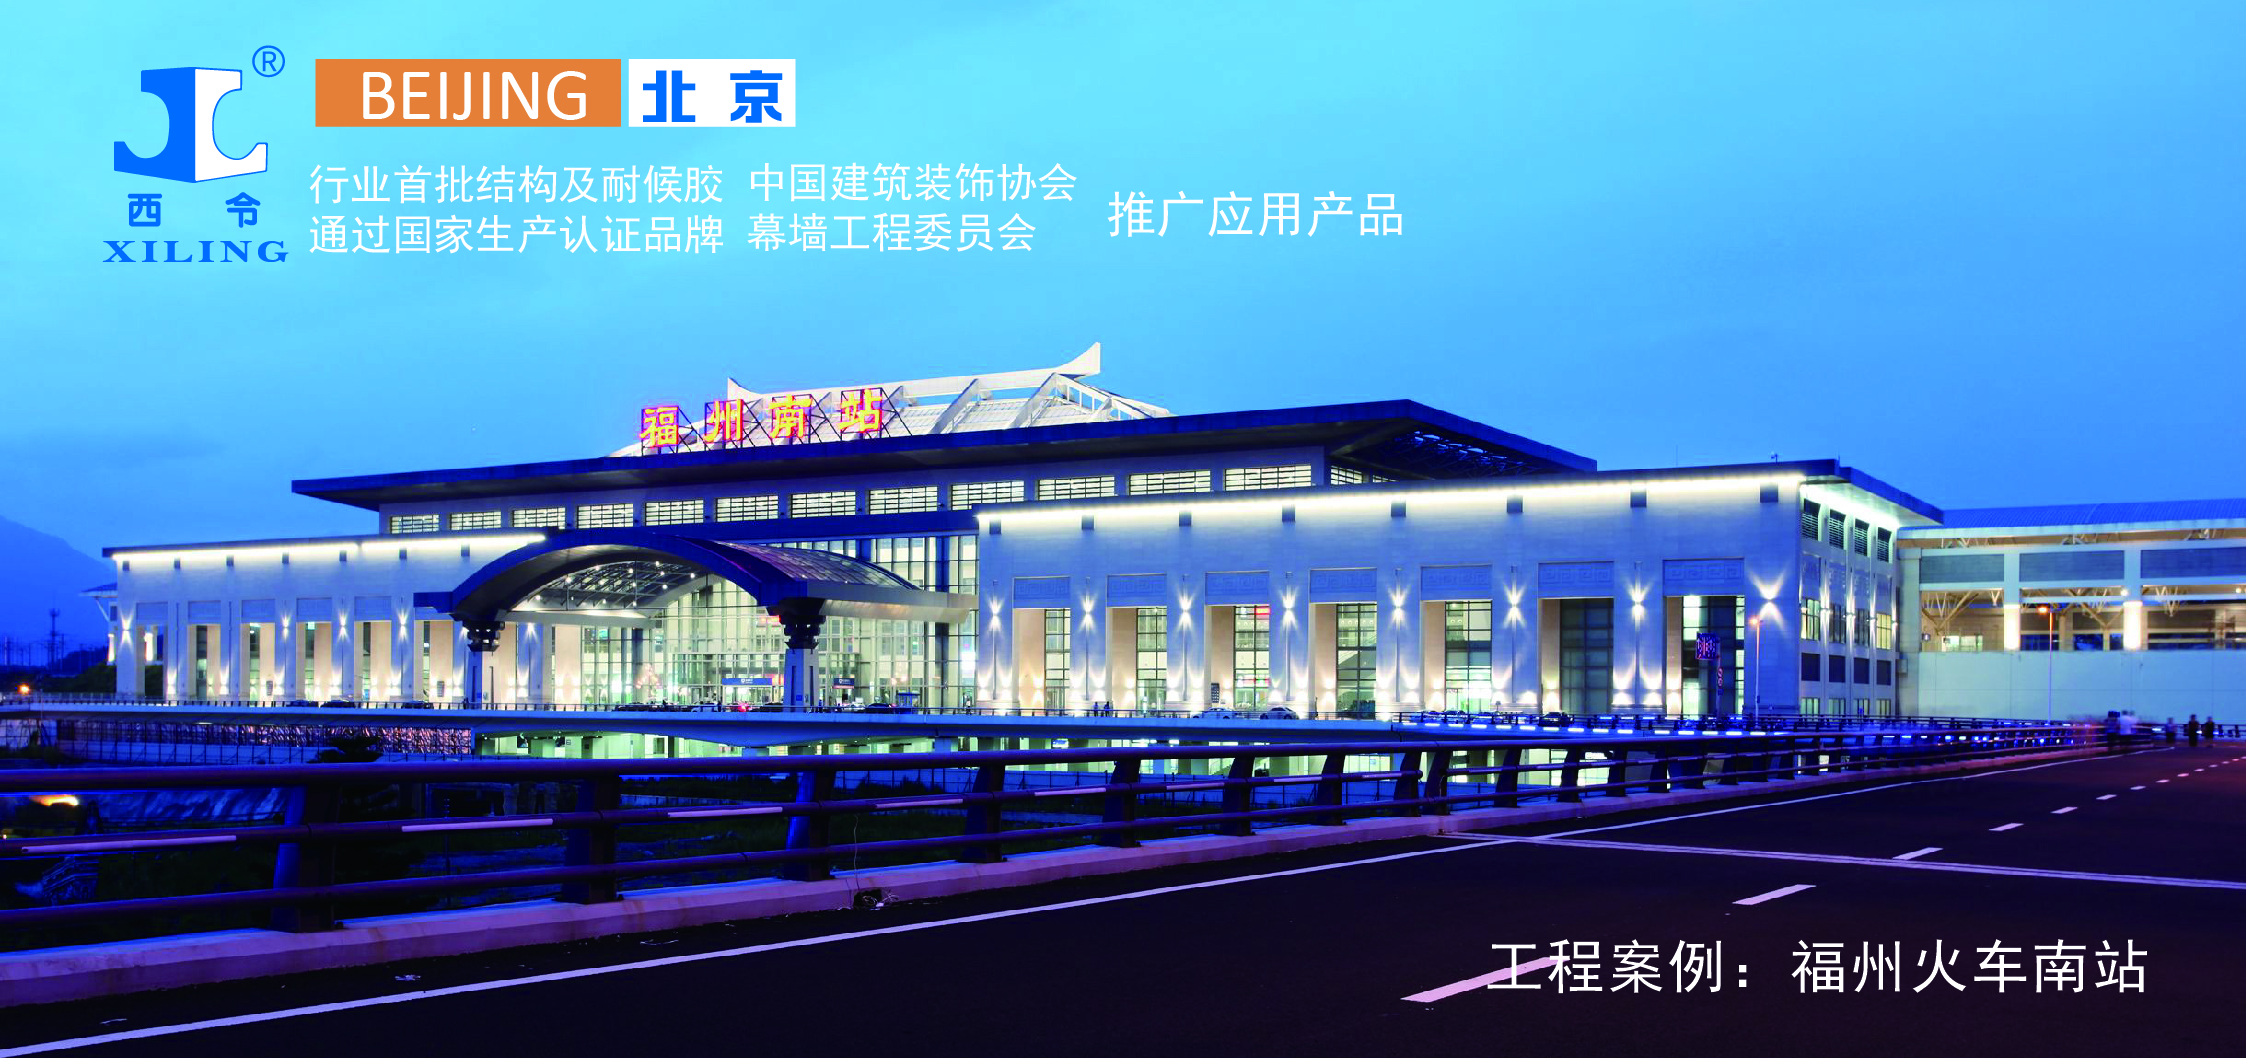 福州南站(Fuzhounan Raliway Station)位于中國福建省福州市倉山區，是中國鐵路南昌局集團有限公司管轄的一等站，是中國十大區域性鐵路客運交通樞紐之一， 是福建省最重要的綜合交通樞紐，也是福州市對外開放的重要門戶。  福州南站總建筑面積19.7萬平方米，旅客候車面積21744平方米。       項目要求     工程對外觀要求極高，要求梁柱表面平整光滑，線條規則分明，外觀色澤一致，混凝土內實外光，消除蜂窩麻面及氣泡。     西令解決方案     XL-1214是專為各種幕墻（玻璃幕墻 鋁板幕墻等等）耐候密封而設計的硅酮密封膠，具有優異的耐候性能。使用時用擠膠槍將膠從密封膠筒中擠到需要密封的接縫中，密封 膠在室溫下吸收空氣中的水分，固化成彈性體，形成有效密封。本產品獲得中國建筑材料檢驗認證 中心CTC產品質量認證并已列入保障性住房建設材料部品采購信息平臺。完全達到客戶預期要求     其他     福州南站是自2004年12月溫福鐵路開工建設四年以來福州市鐵路建設快速發展的延續。福州南站作為中國十大區域性鐵路客運交通樞紐之一，是匯集鐵路、地鐵、常規公交、汽車客運、出租車、社會車輛等各種交通方式于一體的現代化大型鐵路旅客站房，也是中國東南沿?？焖勹F路通道上已開工建設的最大旅客站房，已成為連接長江三角洲、珠江三角洲的重要節點。